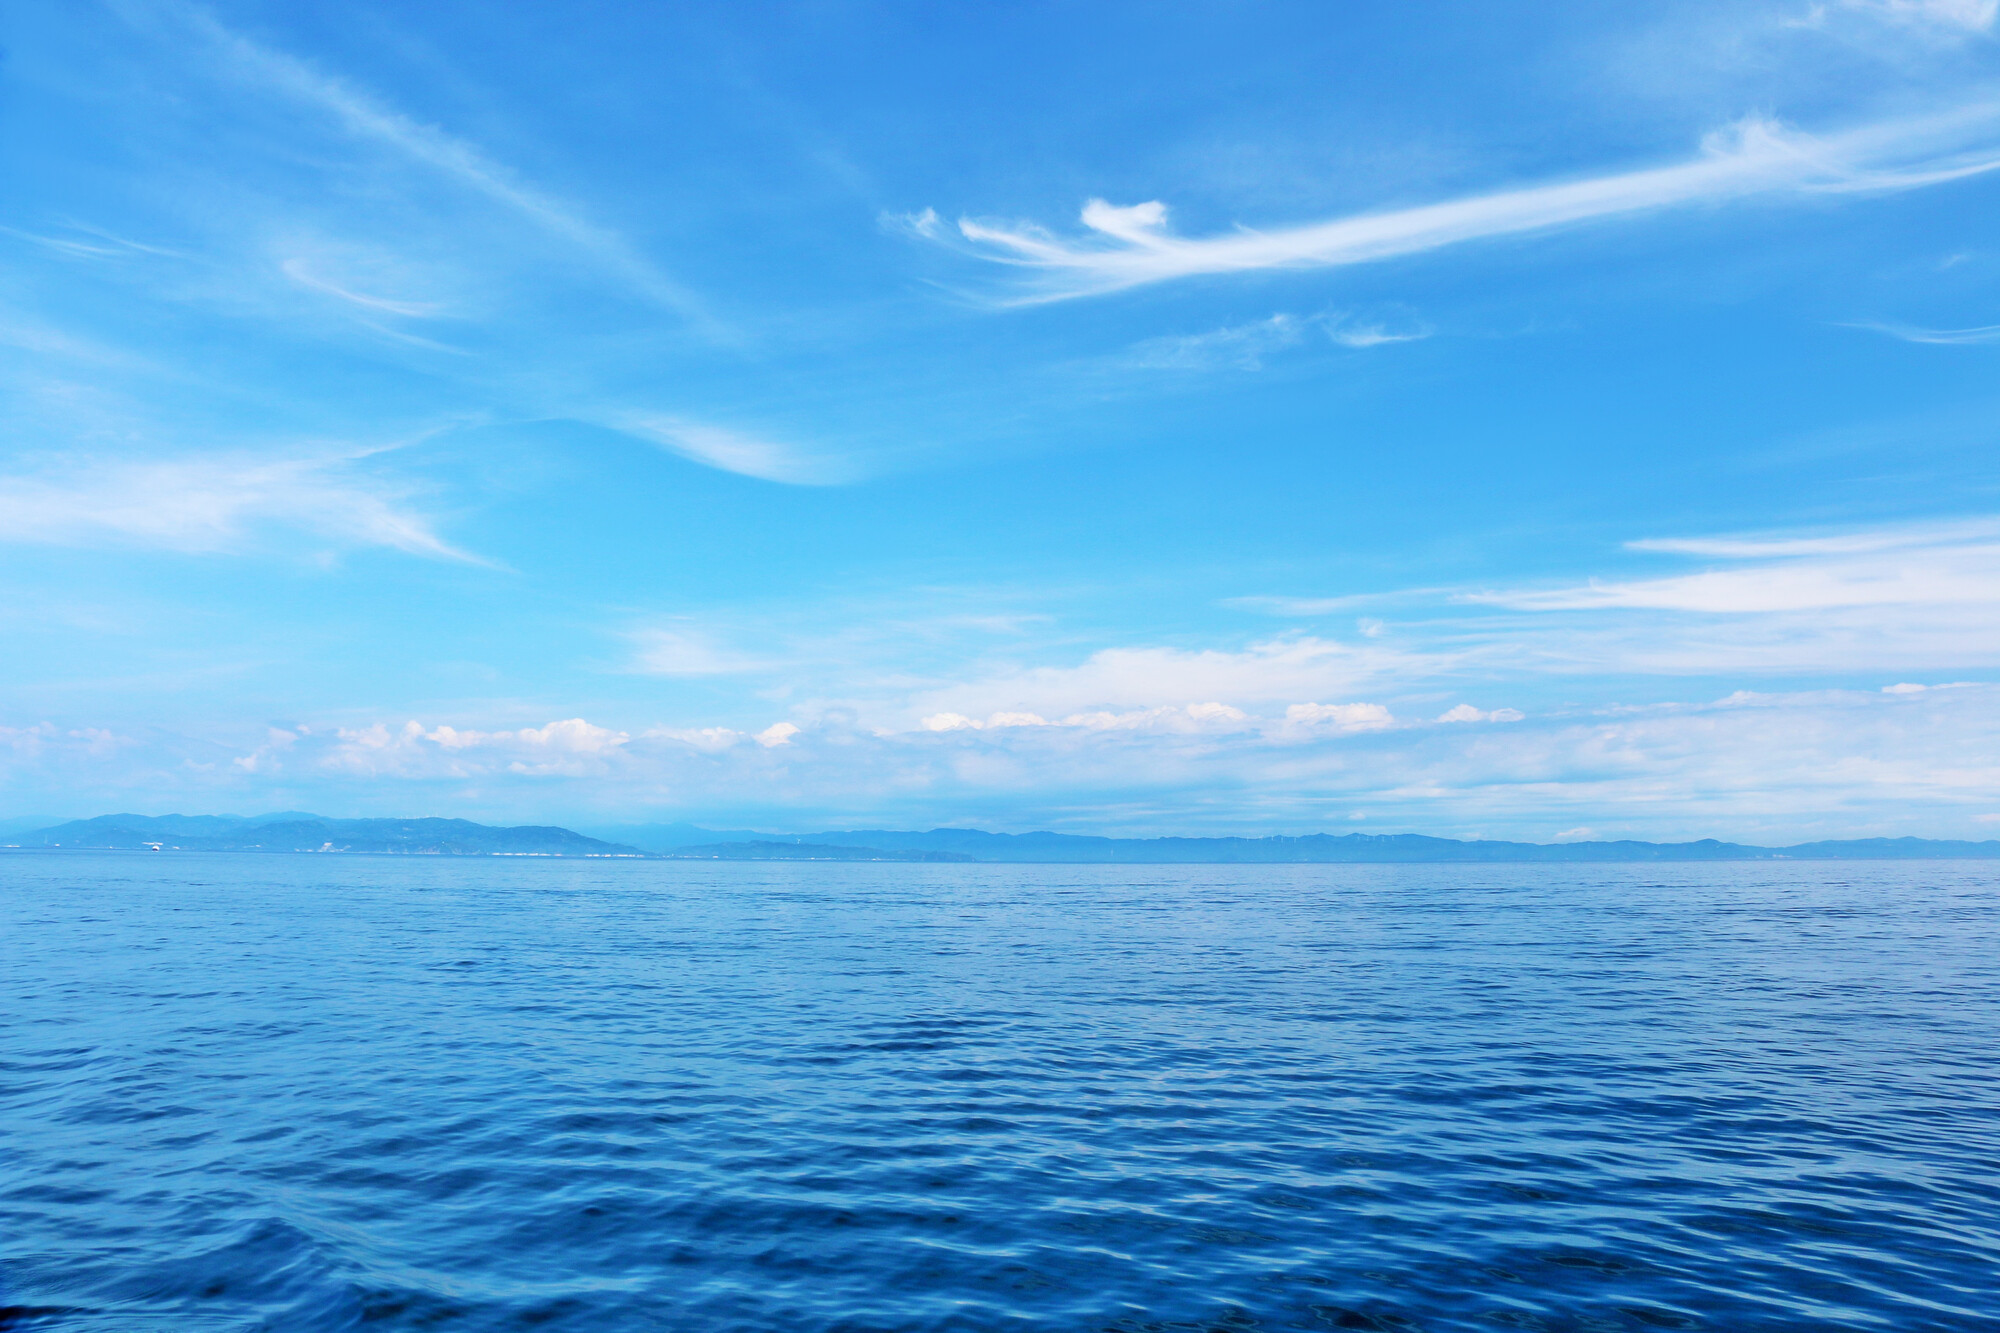 青い海と青い空が広がる海洋散骨